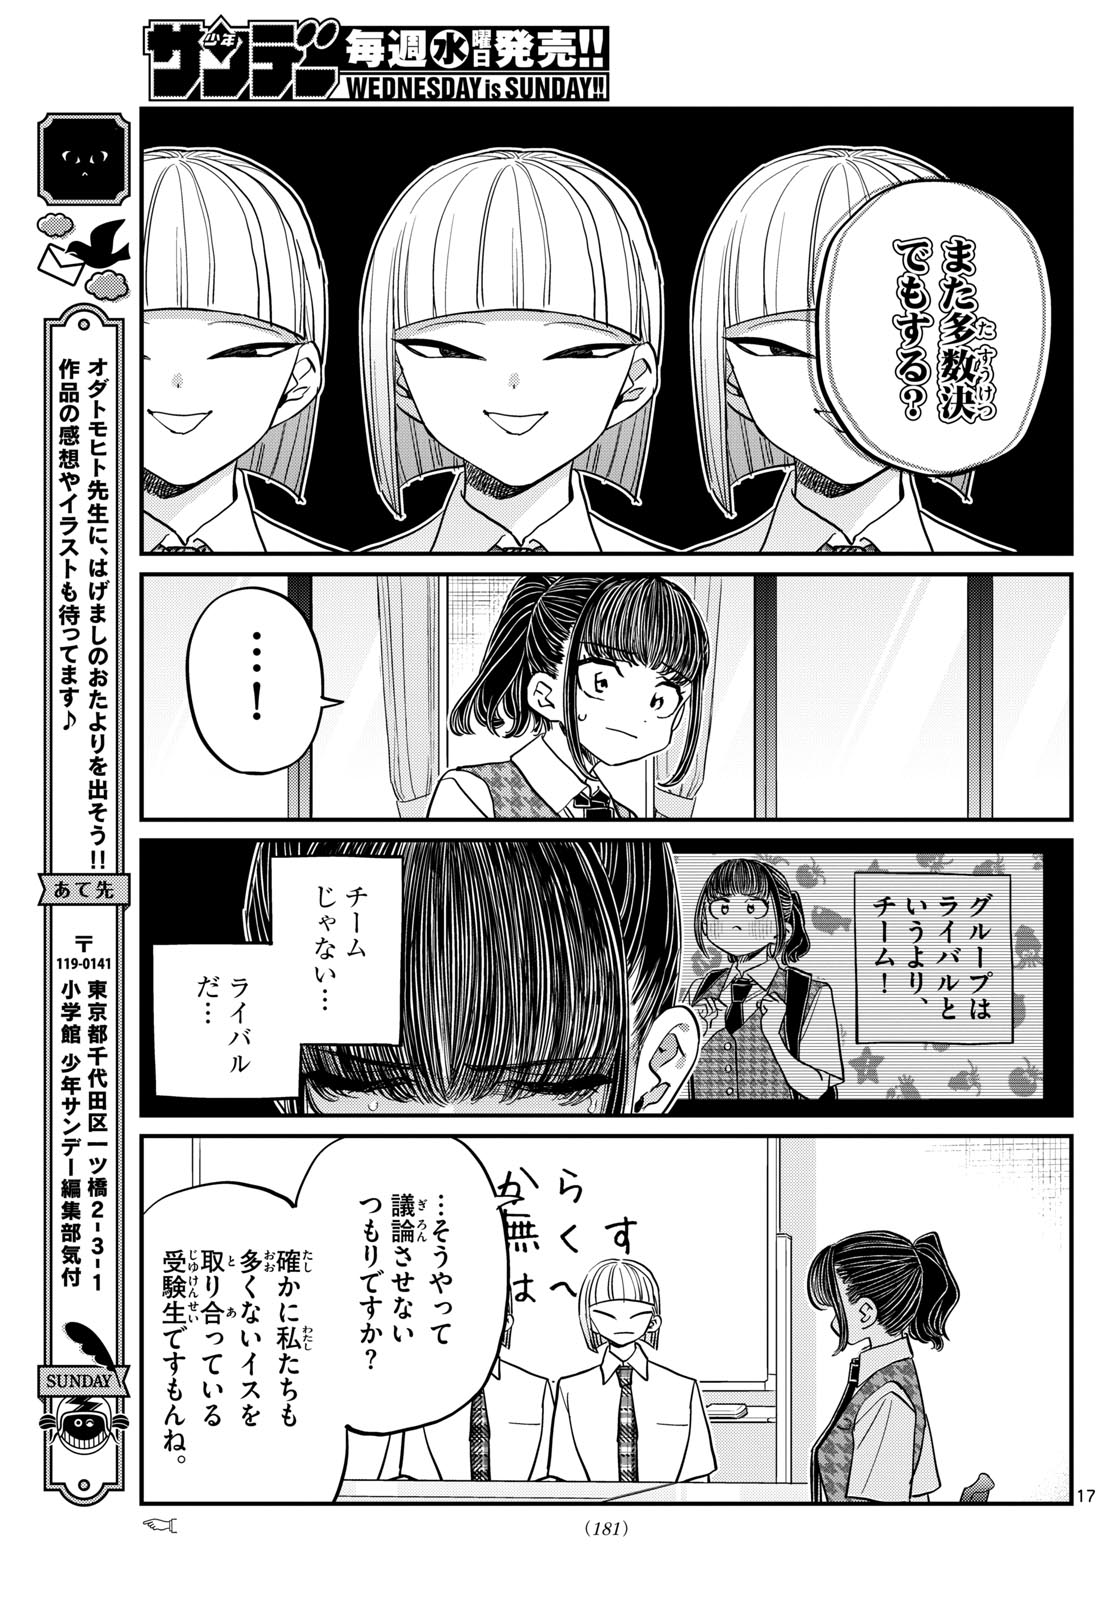 Komi-san wa Komyushou Desu - Chapter 439 - Page 4